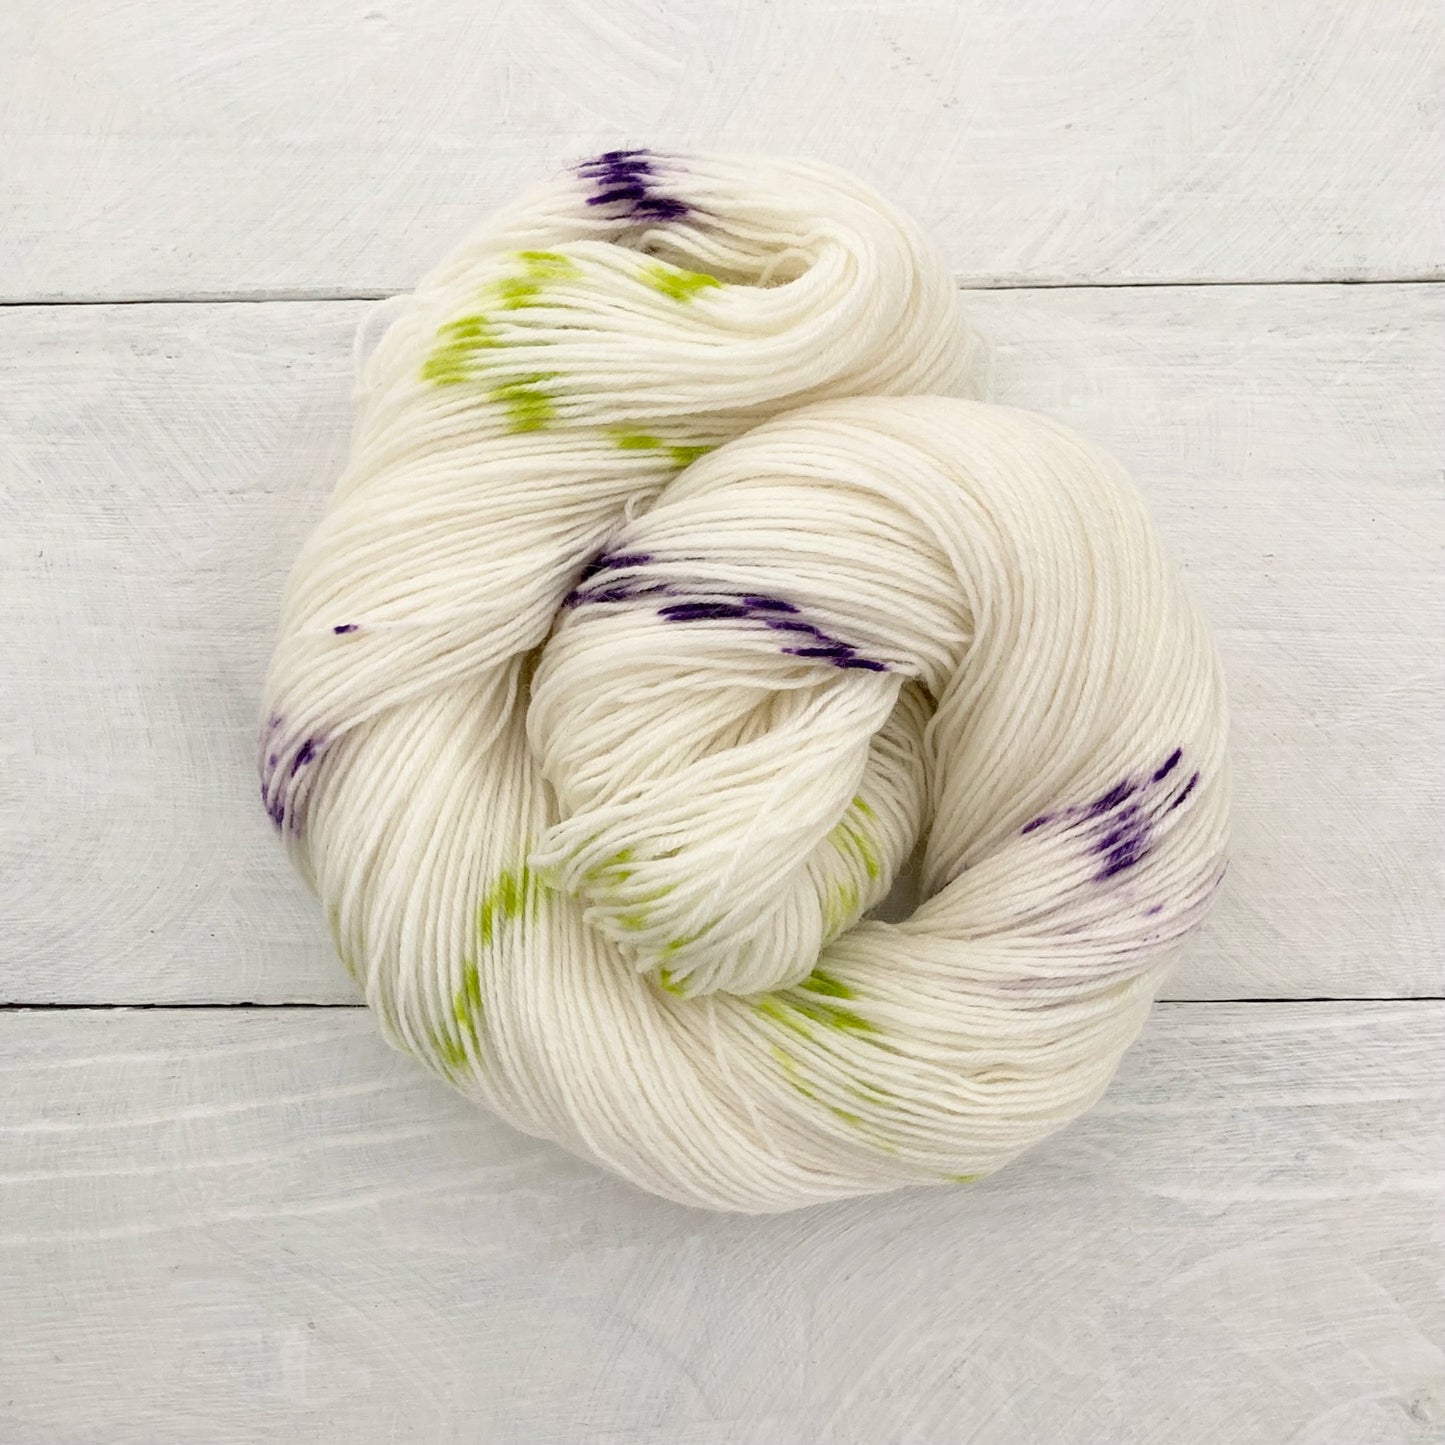 Hand-dyed yarn No.219 sock yarn "Die verschwiegene Nachtigall"